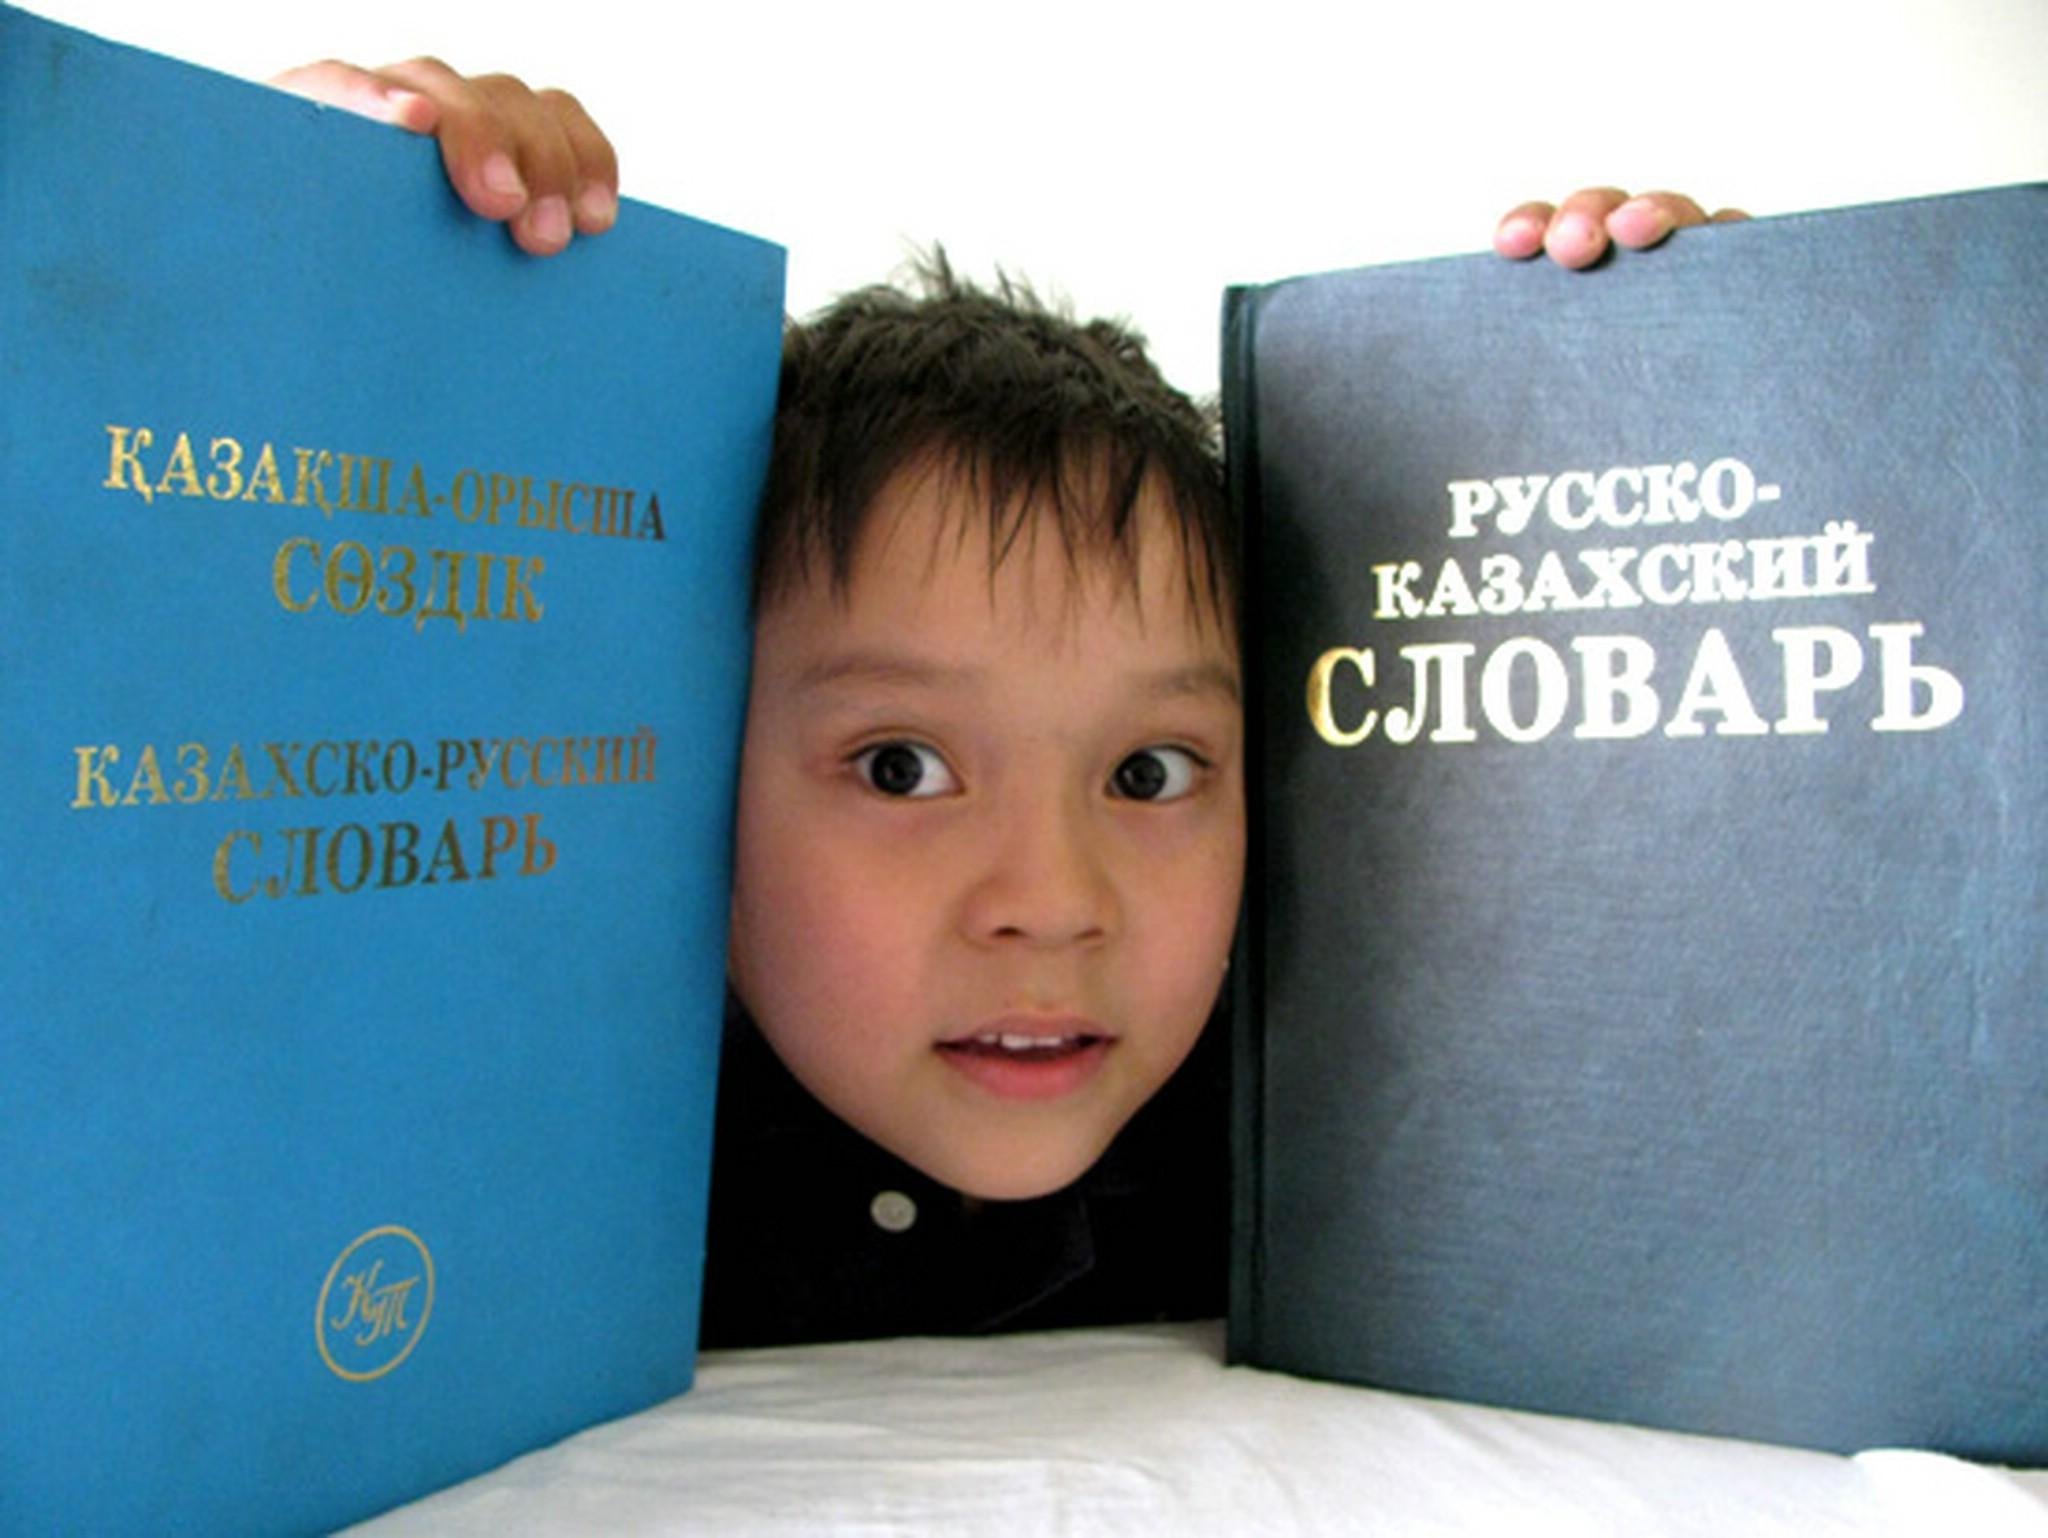 Статус языка в казахстане